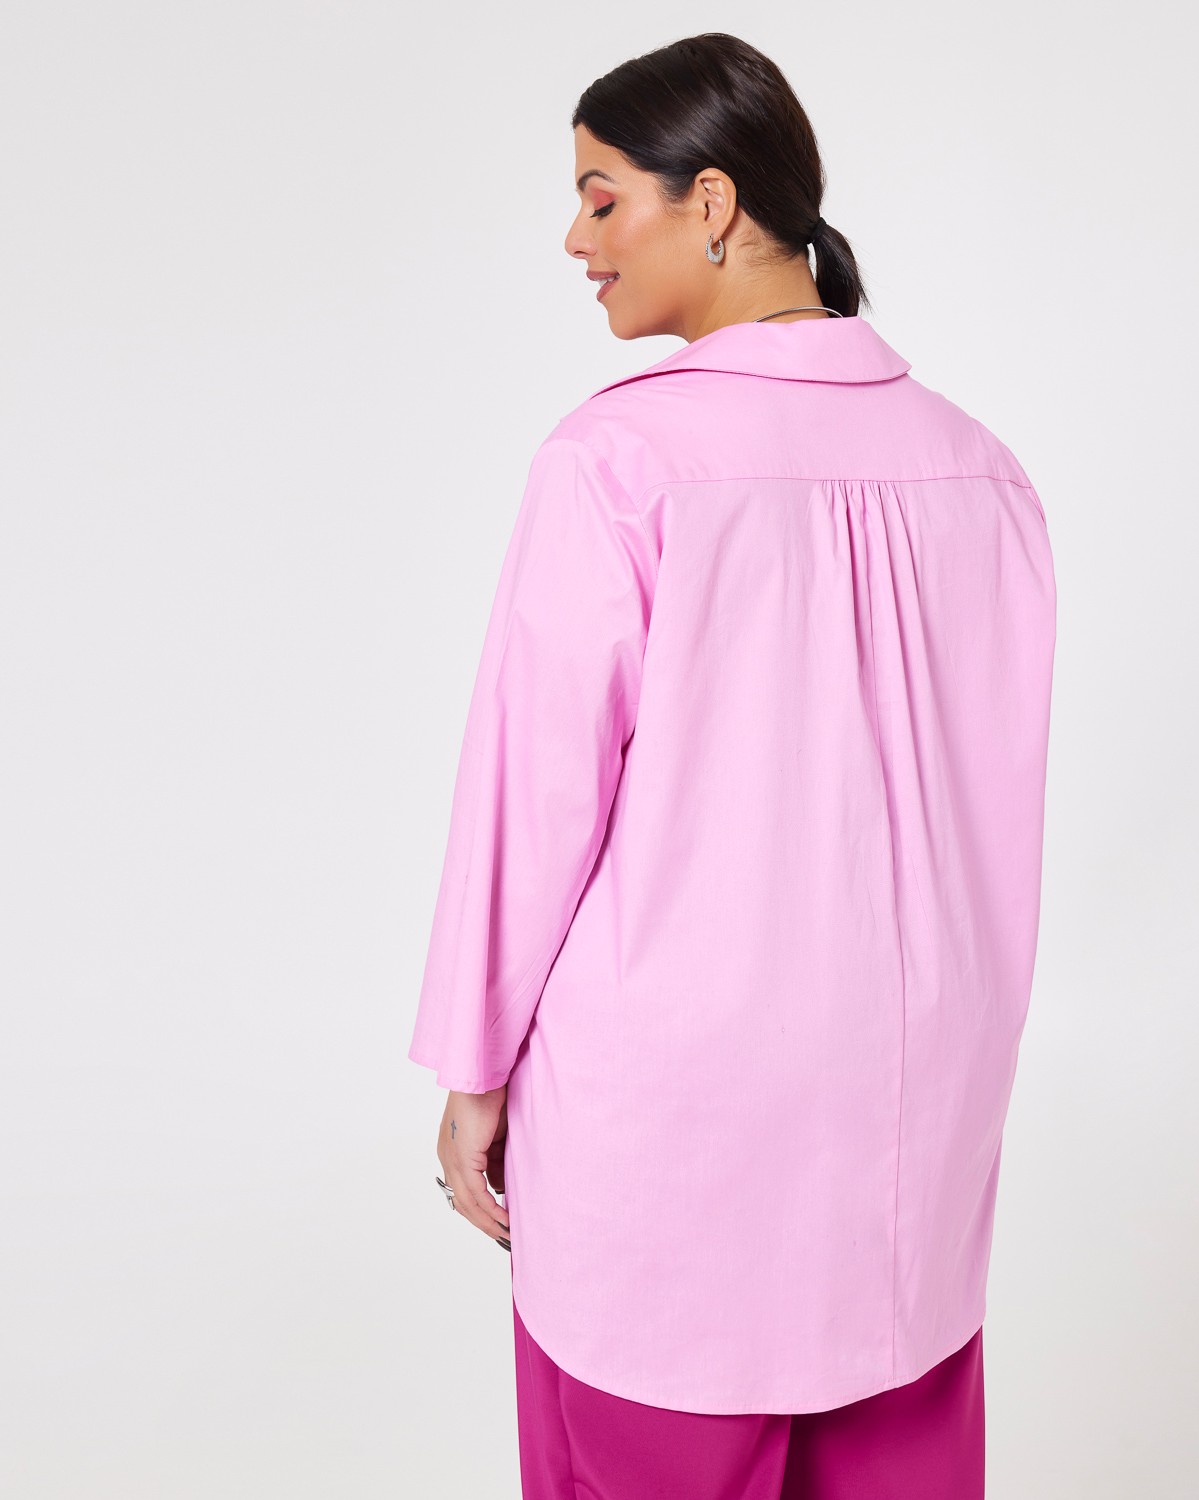 Μπλούζα-Πουκαμίσα Ποπλίνα Bubblegum Pink